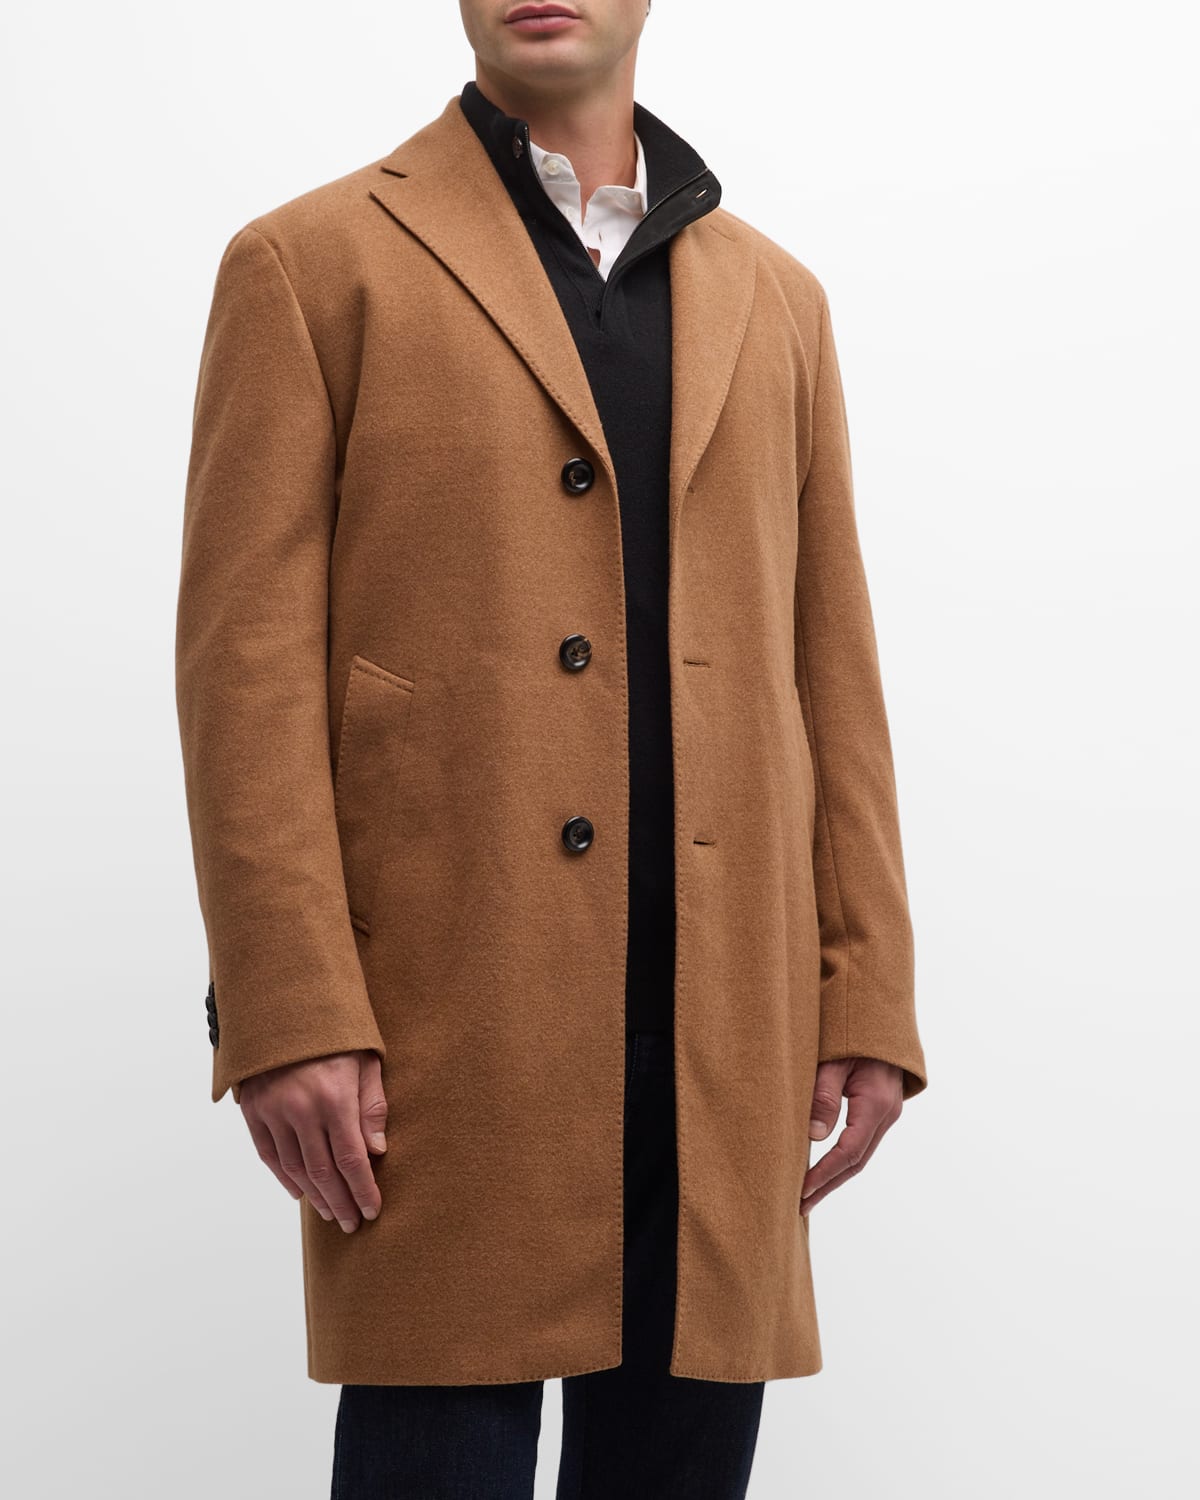 Neiman Marcus Men's 14.5 Micron Wool Topcoat In Medium Brown